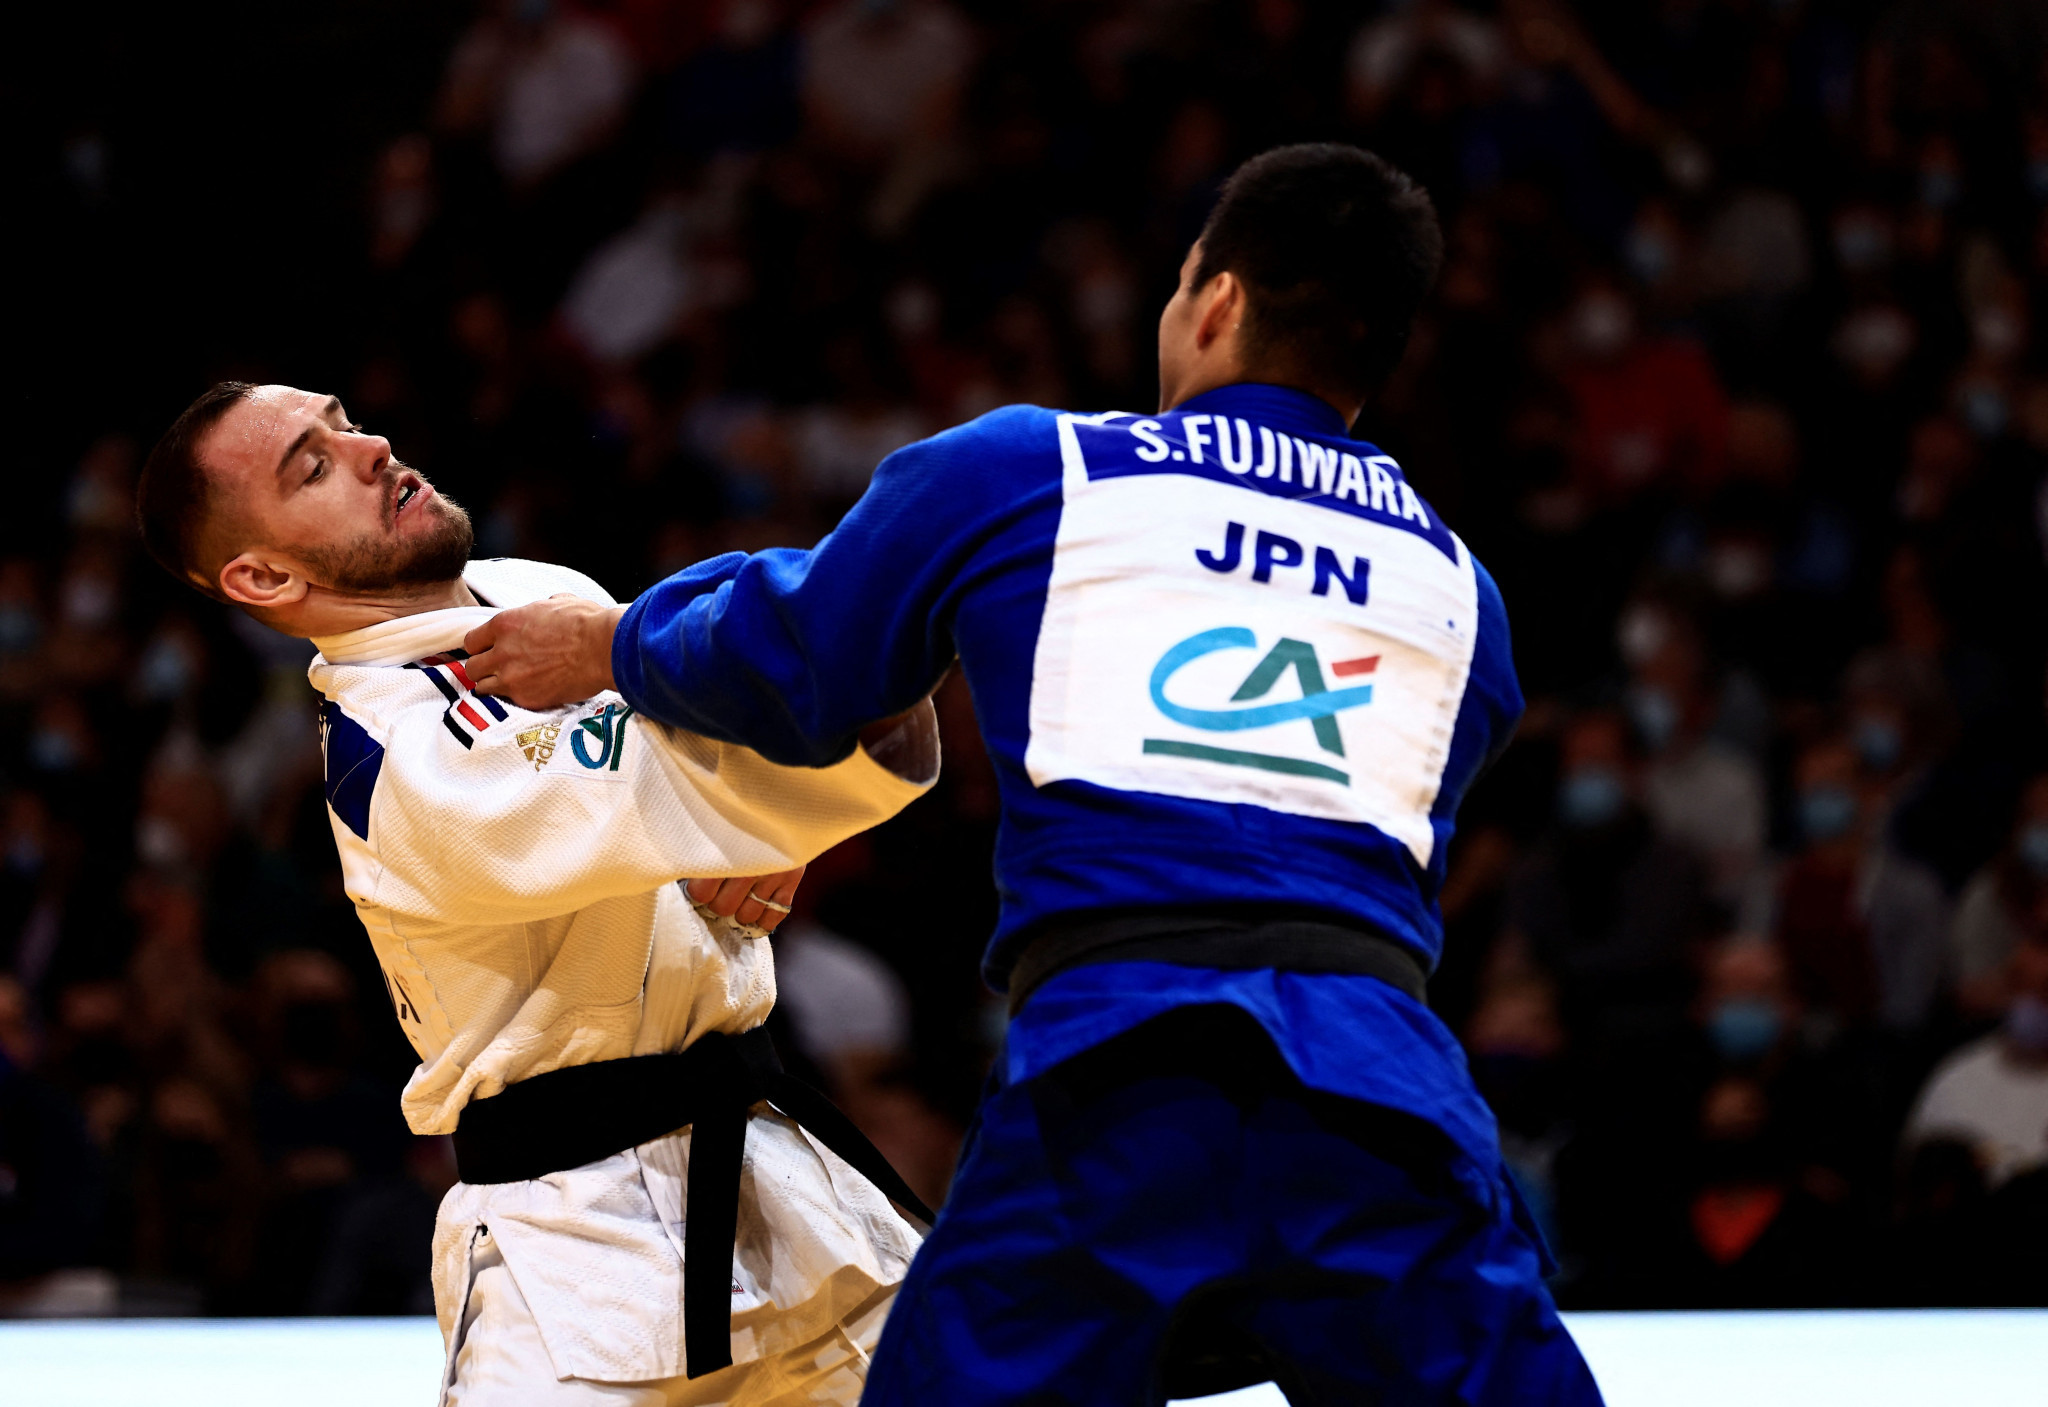 Japan top medal standings at Judo Grand Slam in Paris